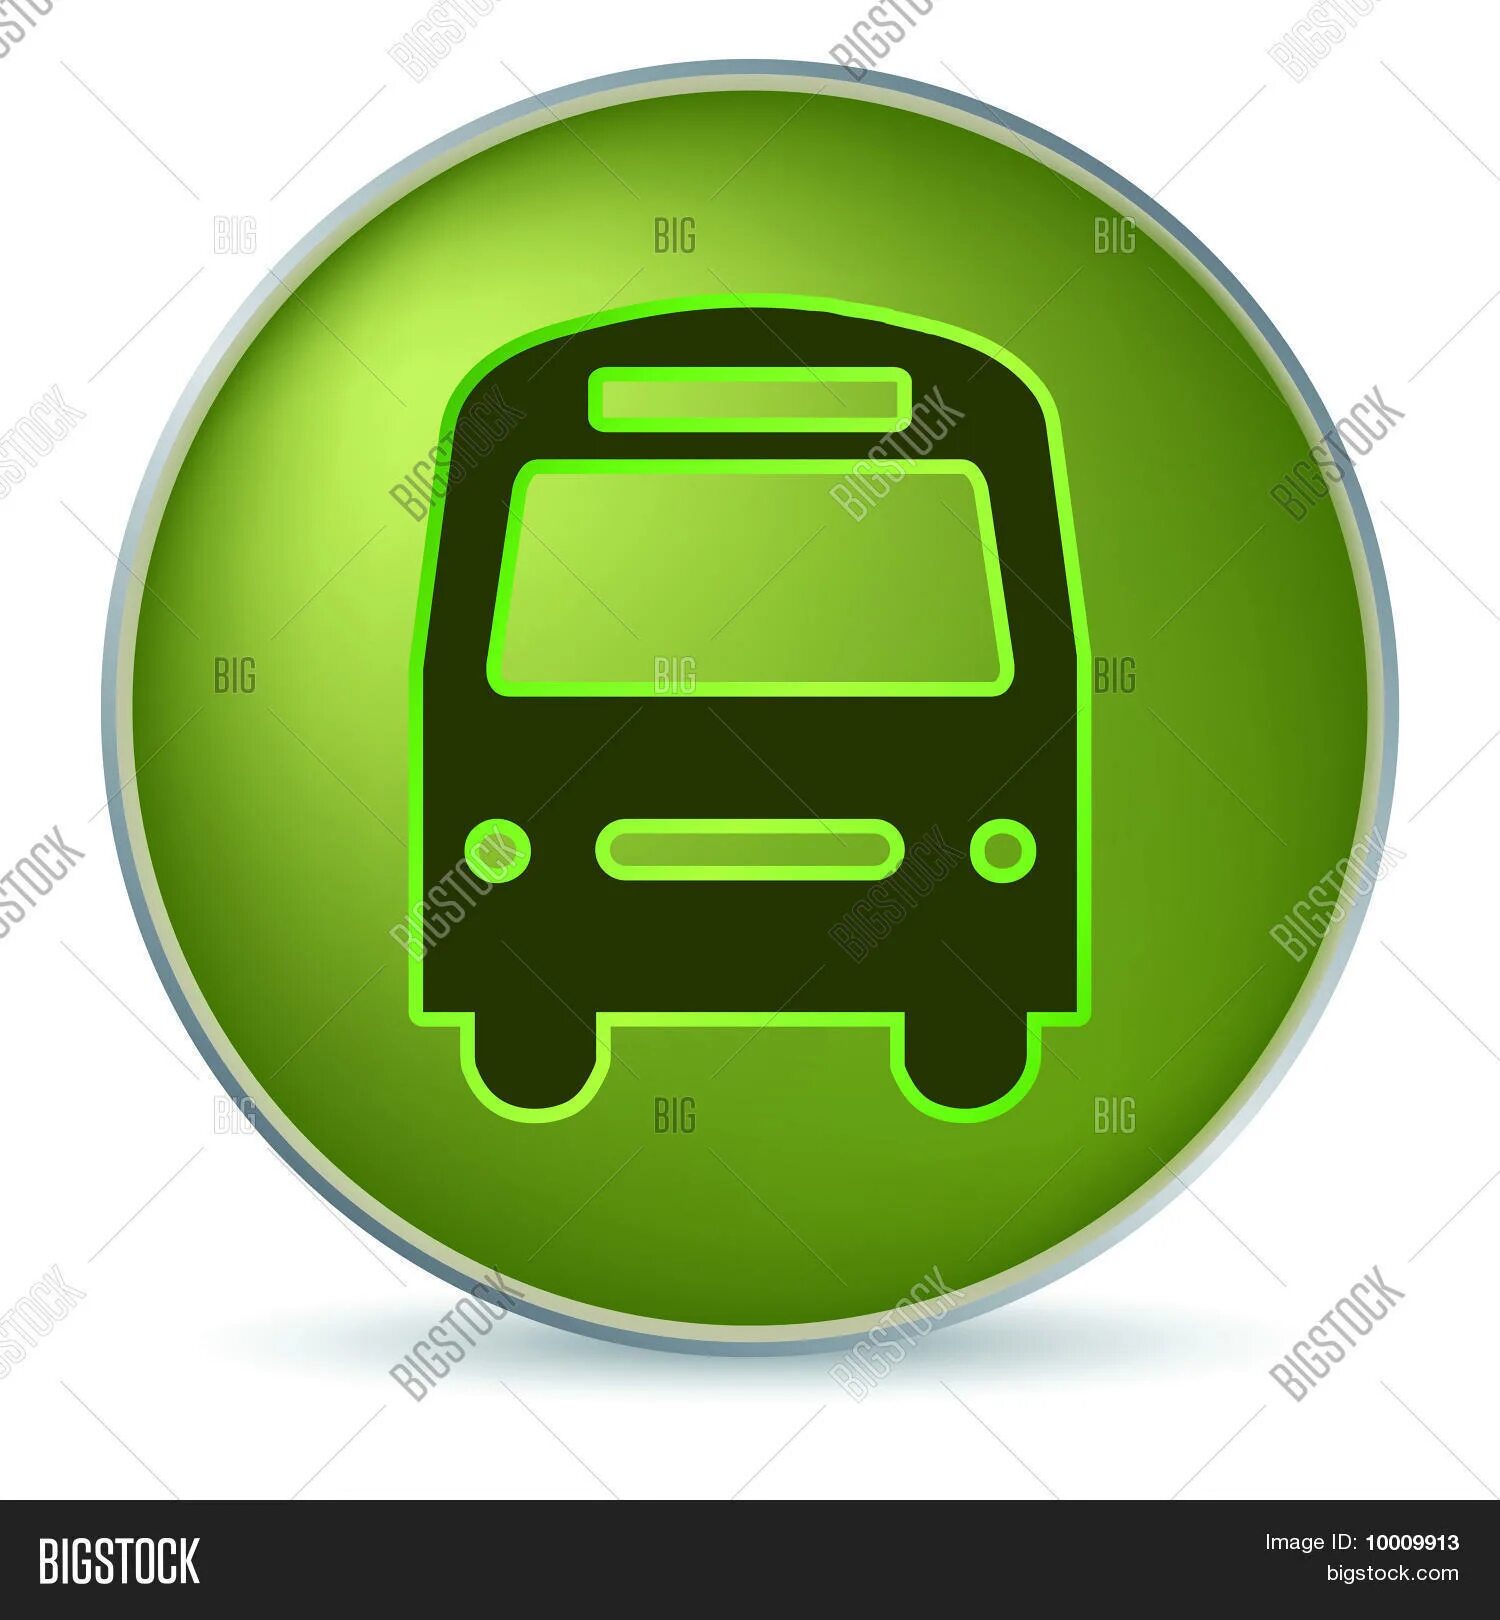 Бастрафик. Иконки автобус зелёный. Значок остановки зеленый. Транспорт иконка зеленая. Значок ожидания транспорта.